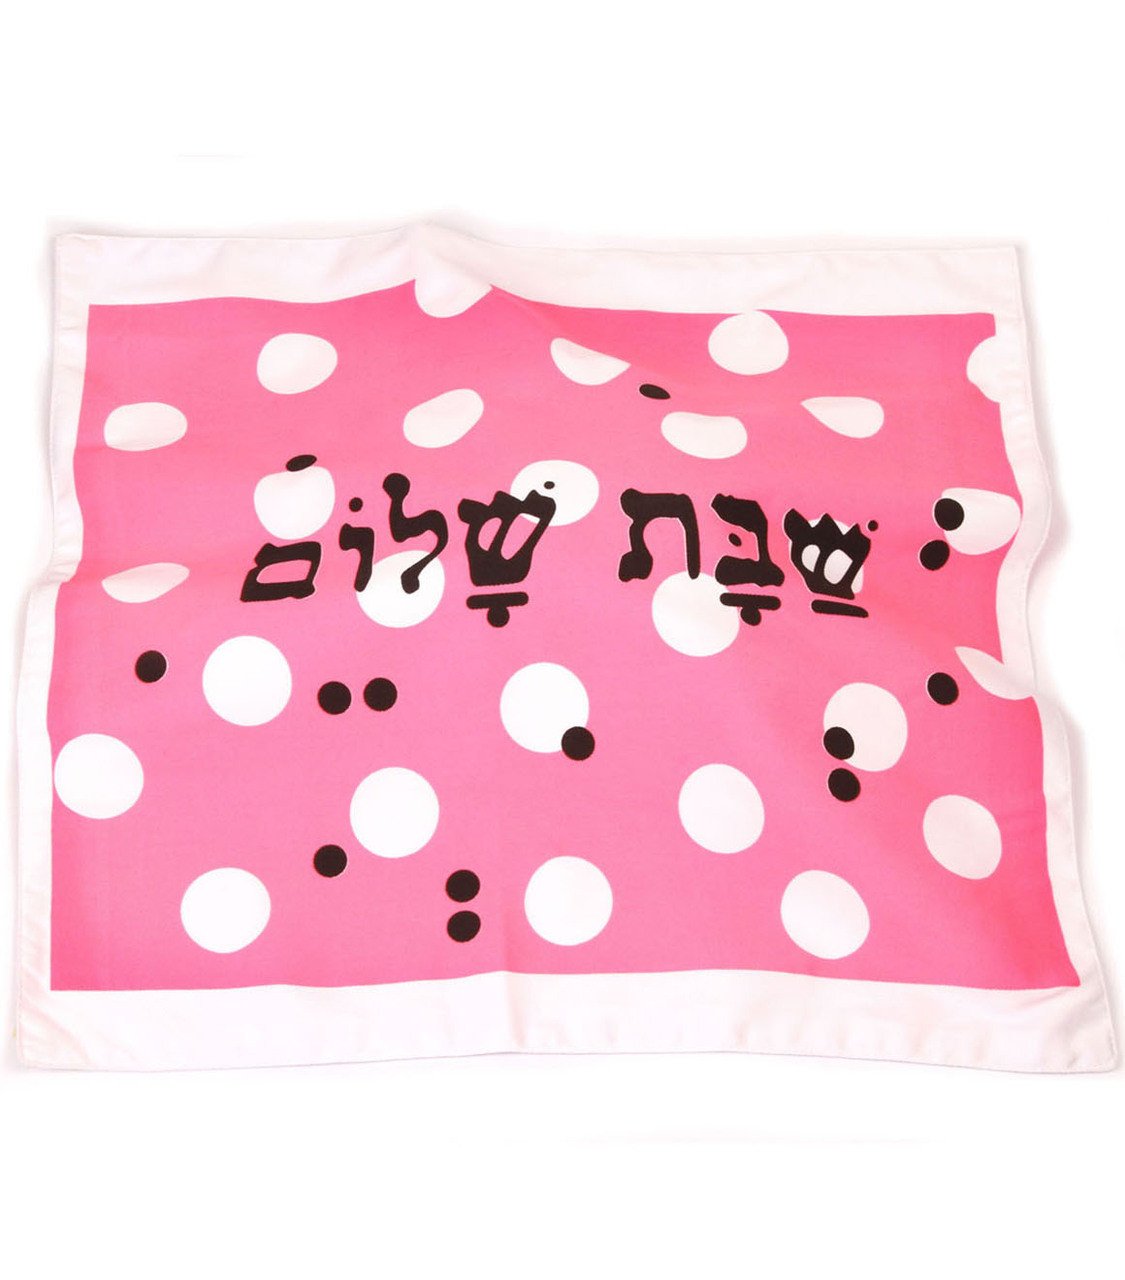 Barbara Shaw Challah Accessory Pink Polka Dots Challah Cover - Pink